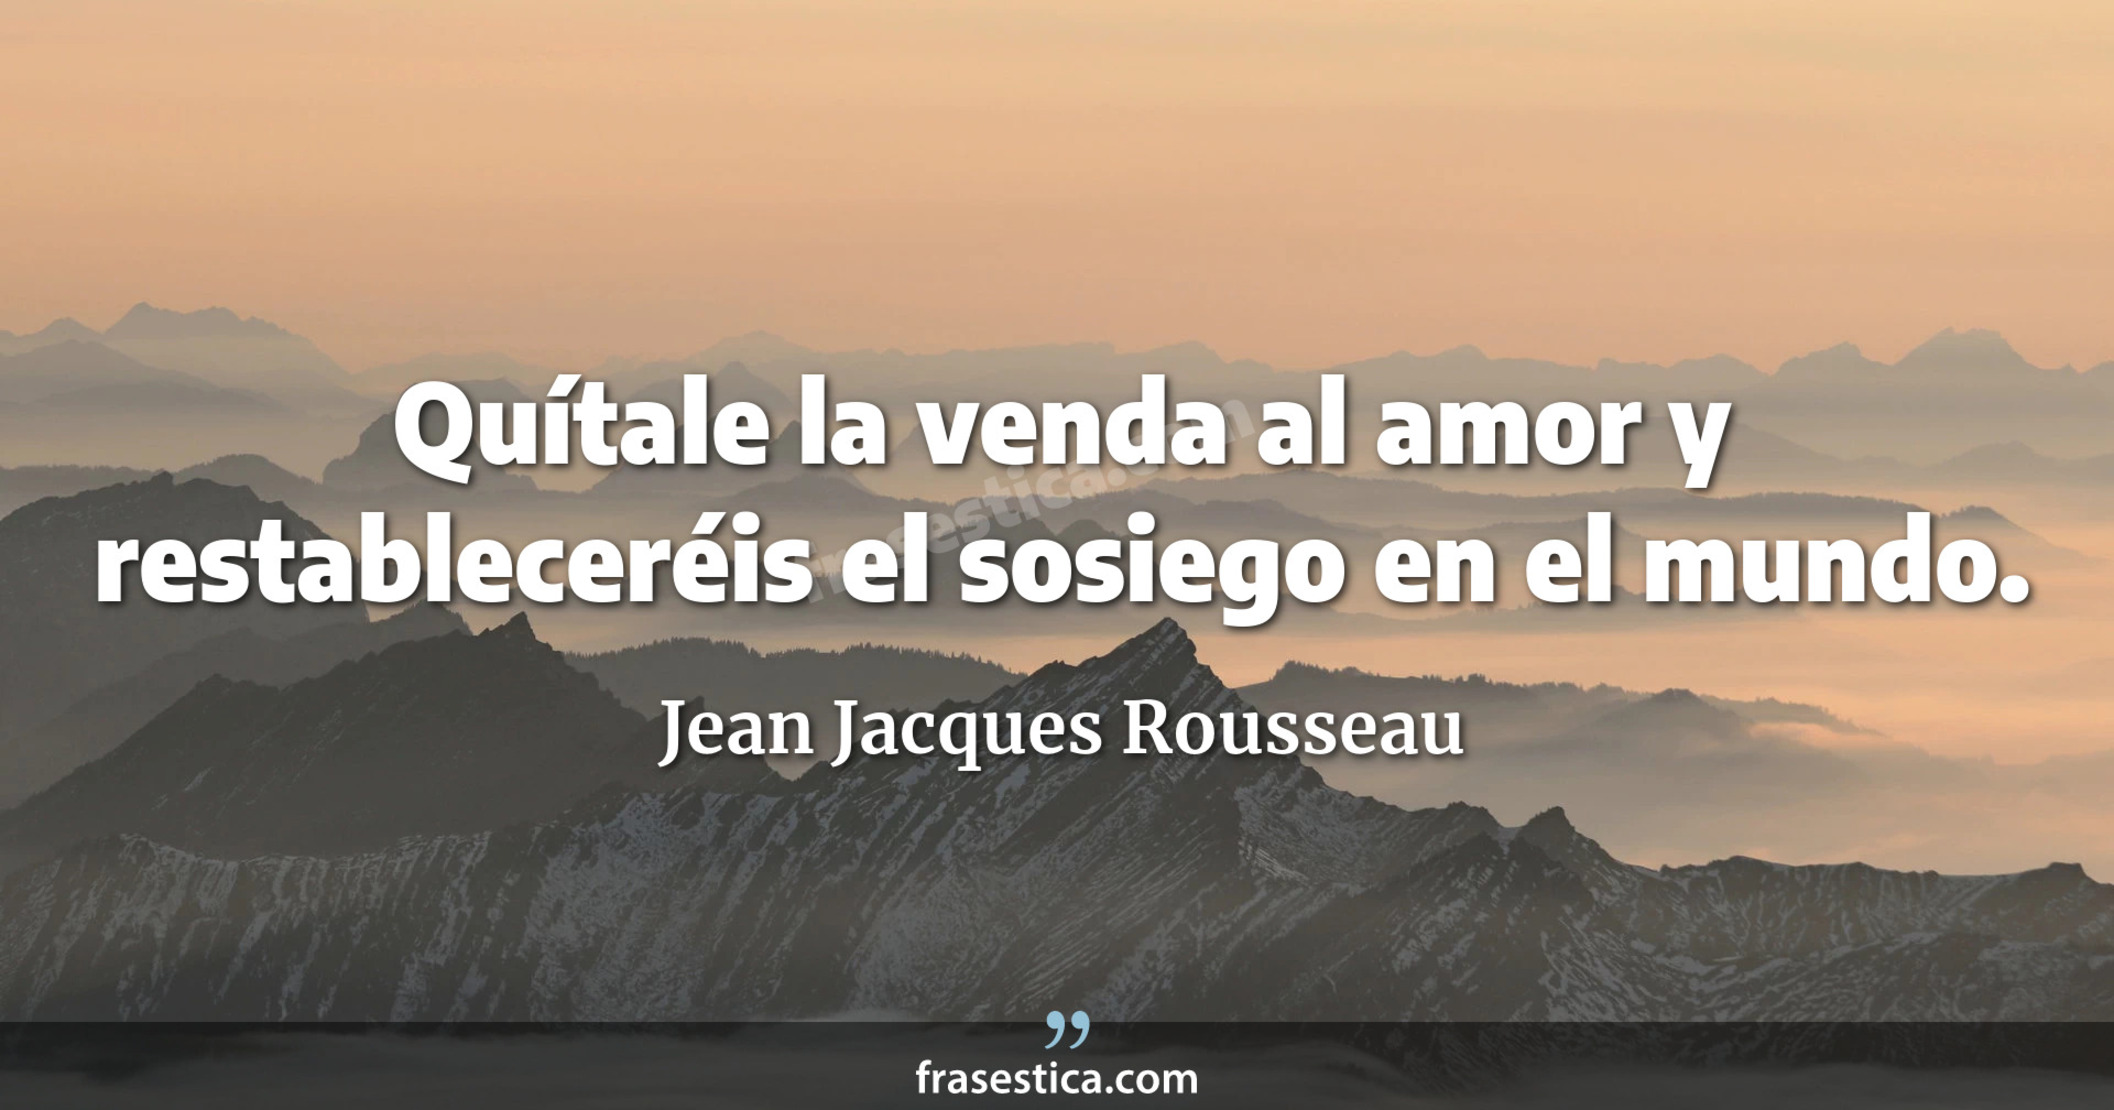 Quítale la venda al amor y restableceréis el sosiego en el mundo. - Jean Jacques Rousseau